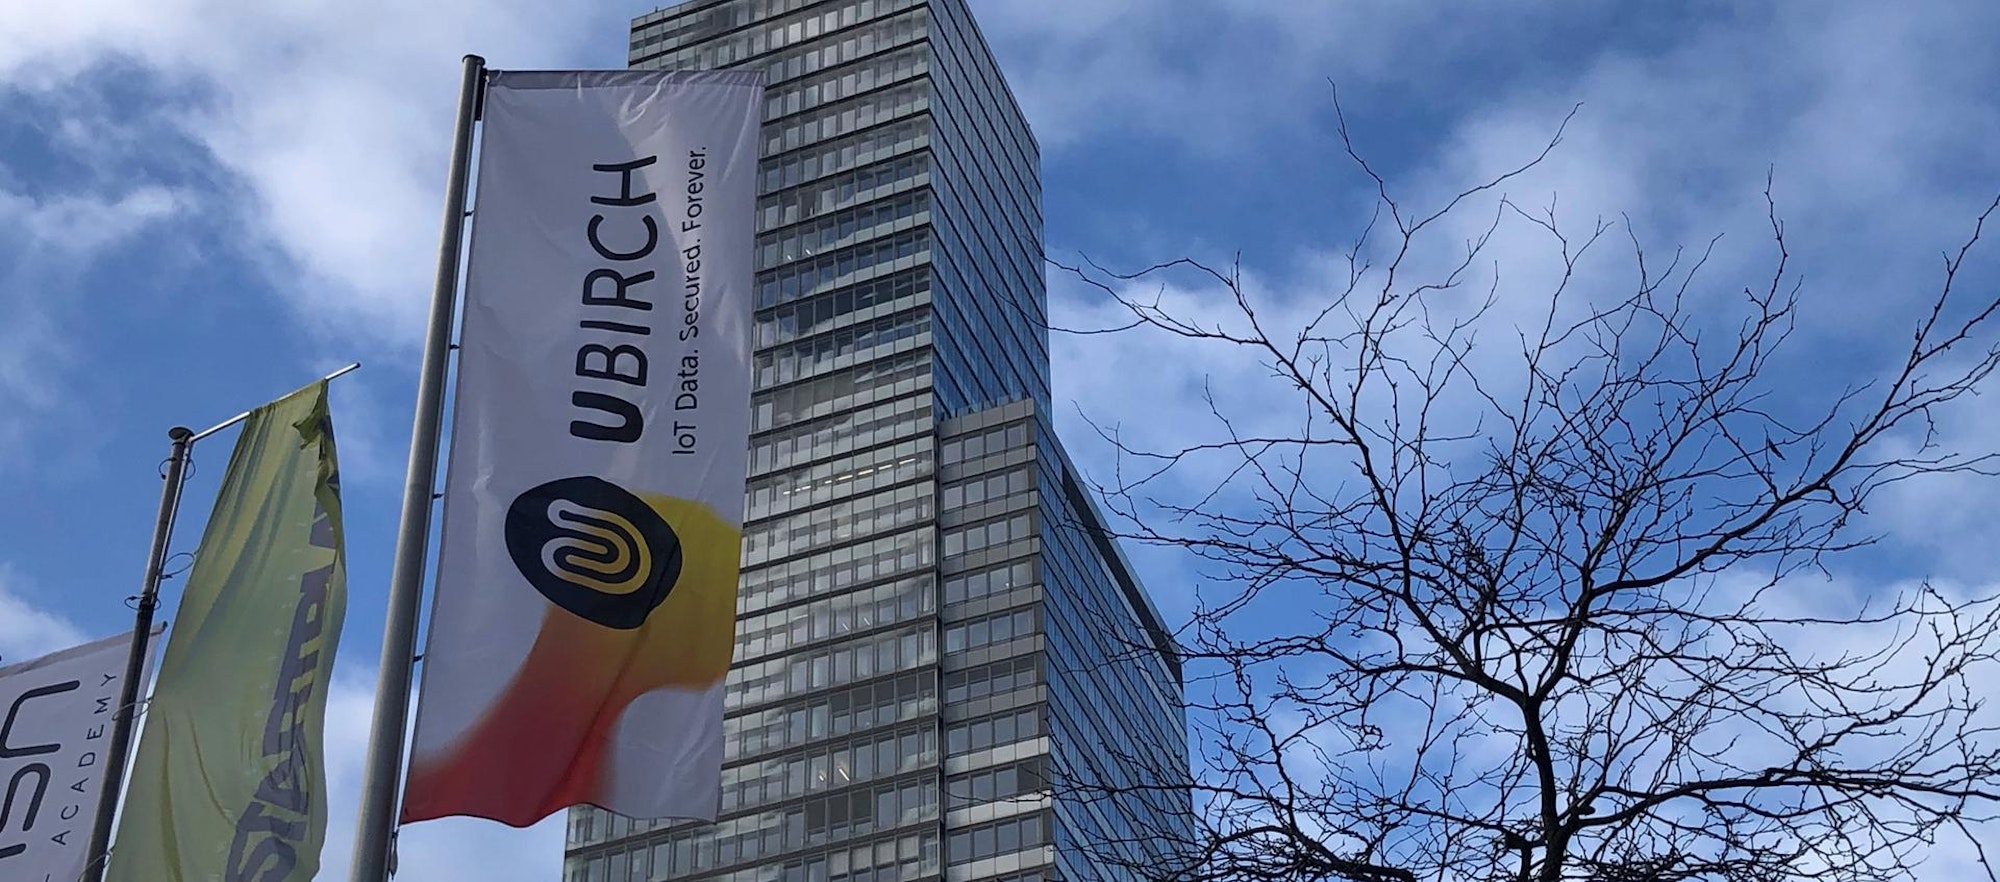 Vor dem KölnTurm im MediaPark weht eine Fahne mit der Aufschrift Ubirch.